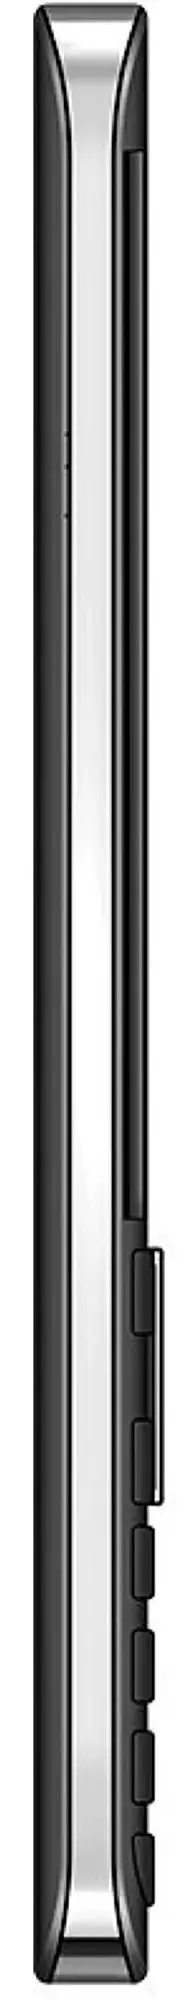 Мобильный телефон Maxcom MM236, черный/серебристый